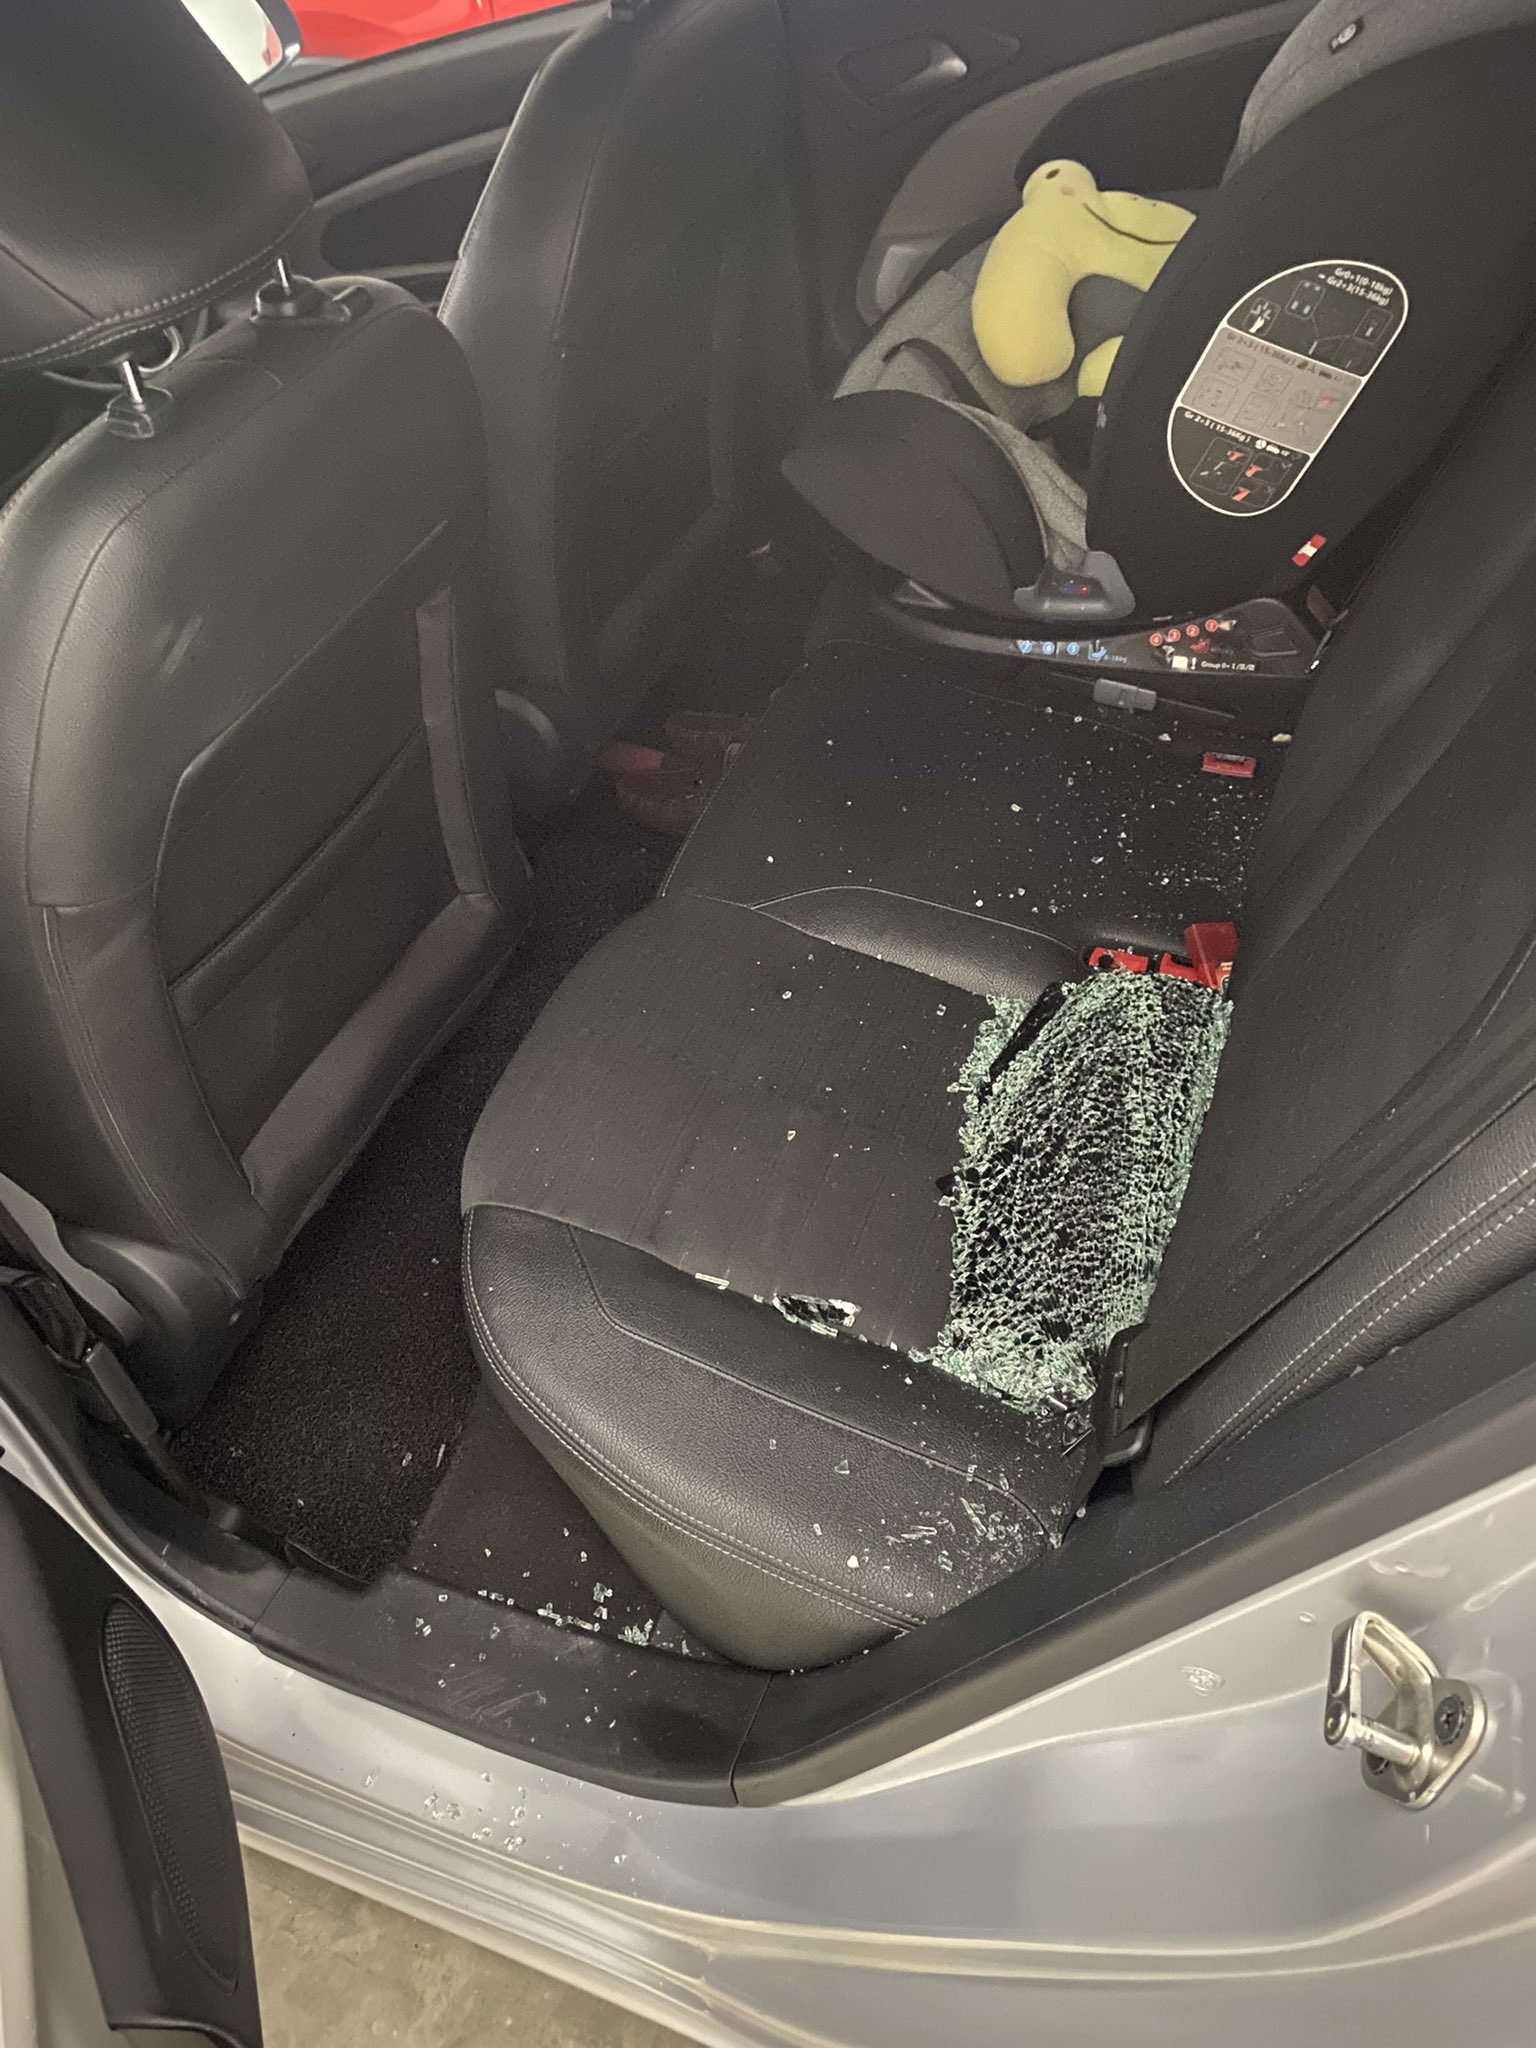 2车同日在商场停车场被砸车镜偷包 